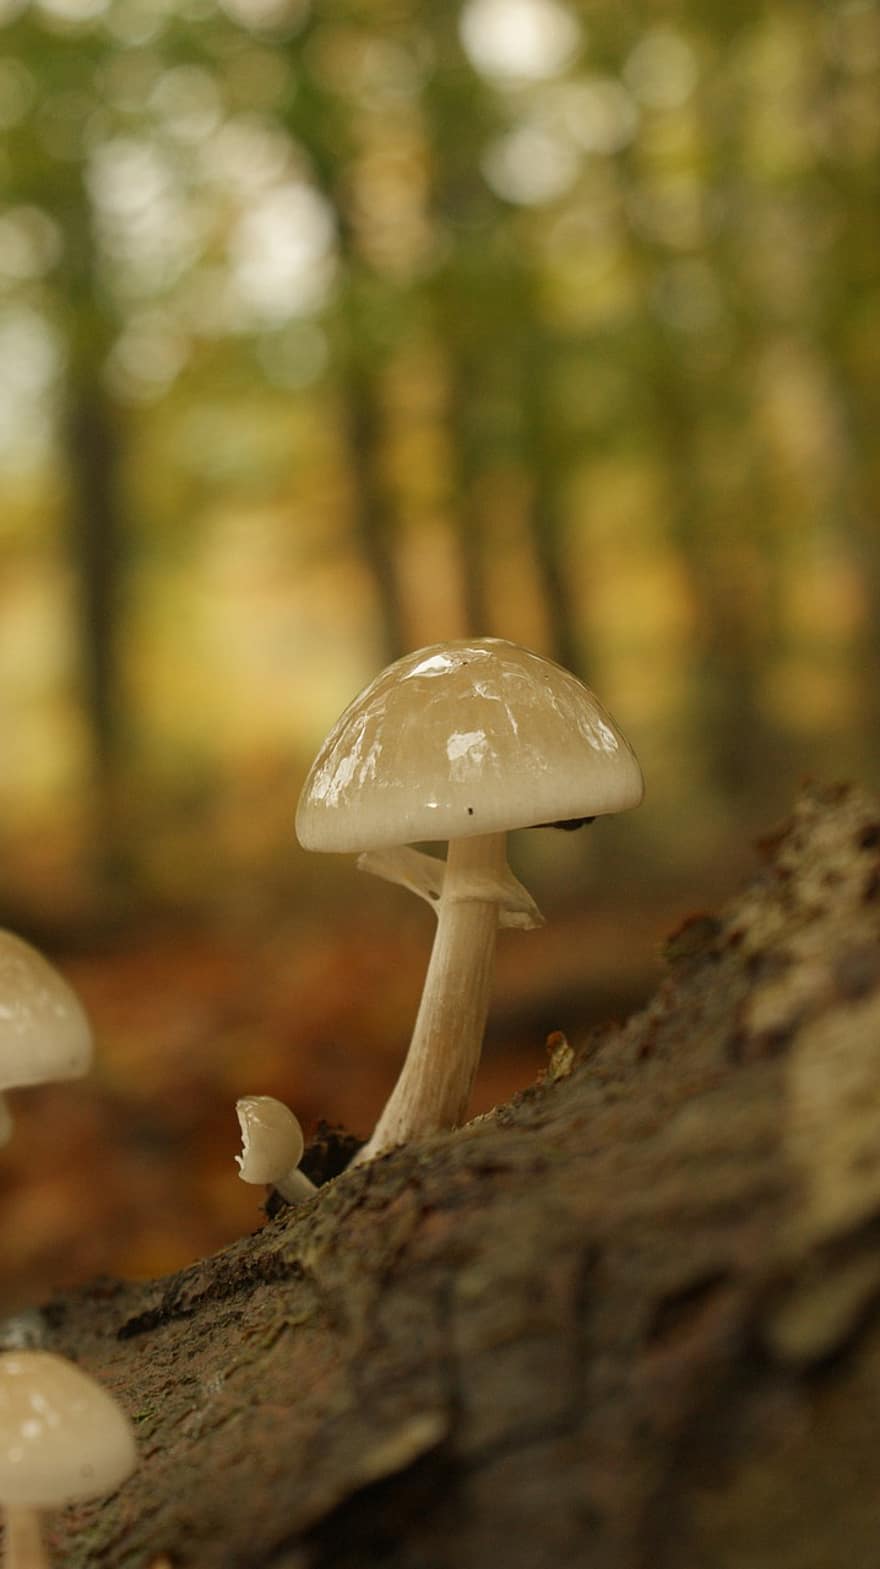 jamur, menanam, kulat, ilmu jamur, jamur porselen, hutan, liar